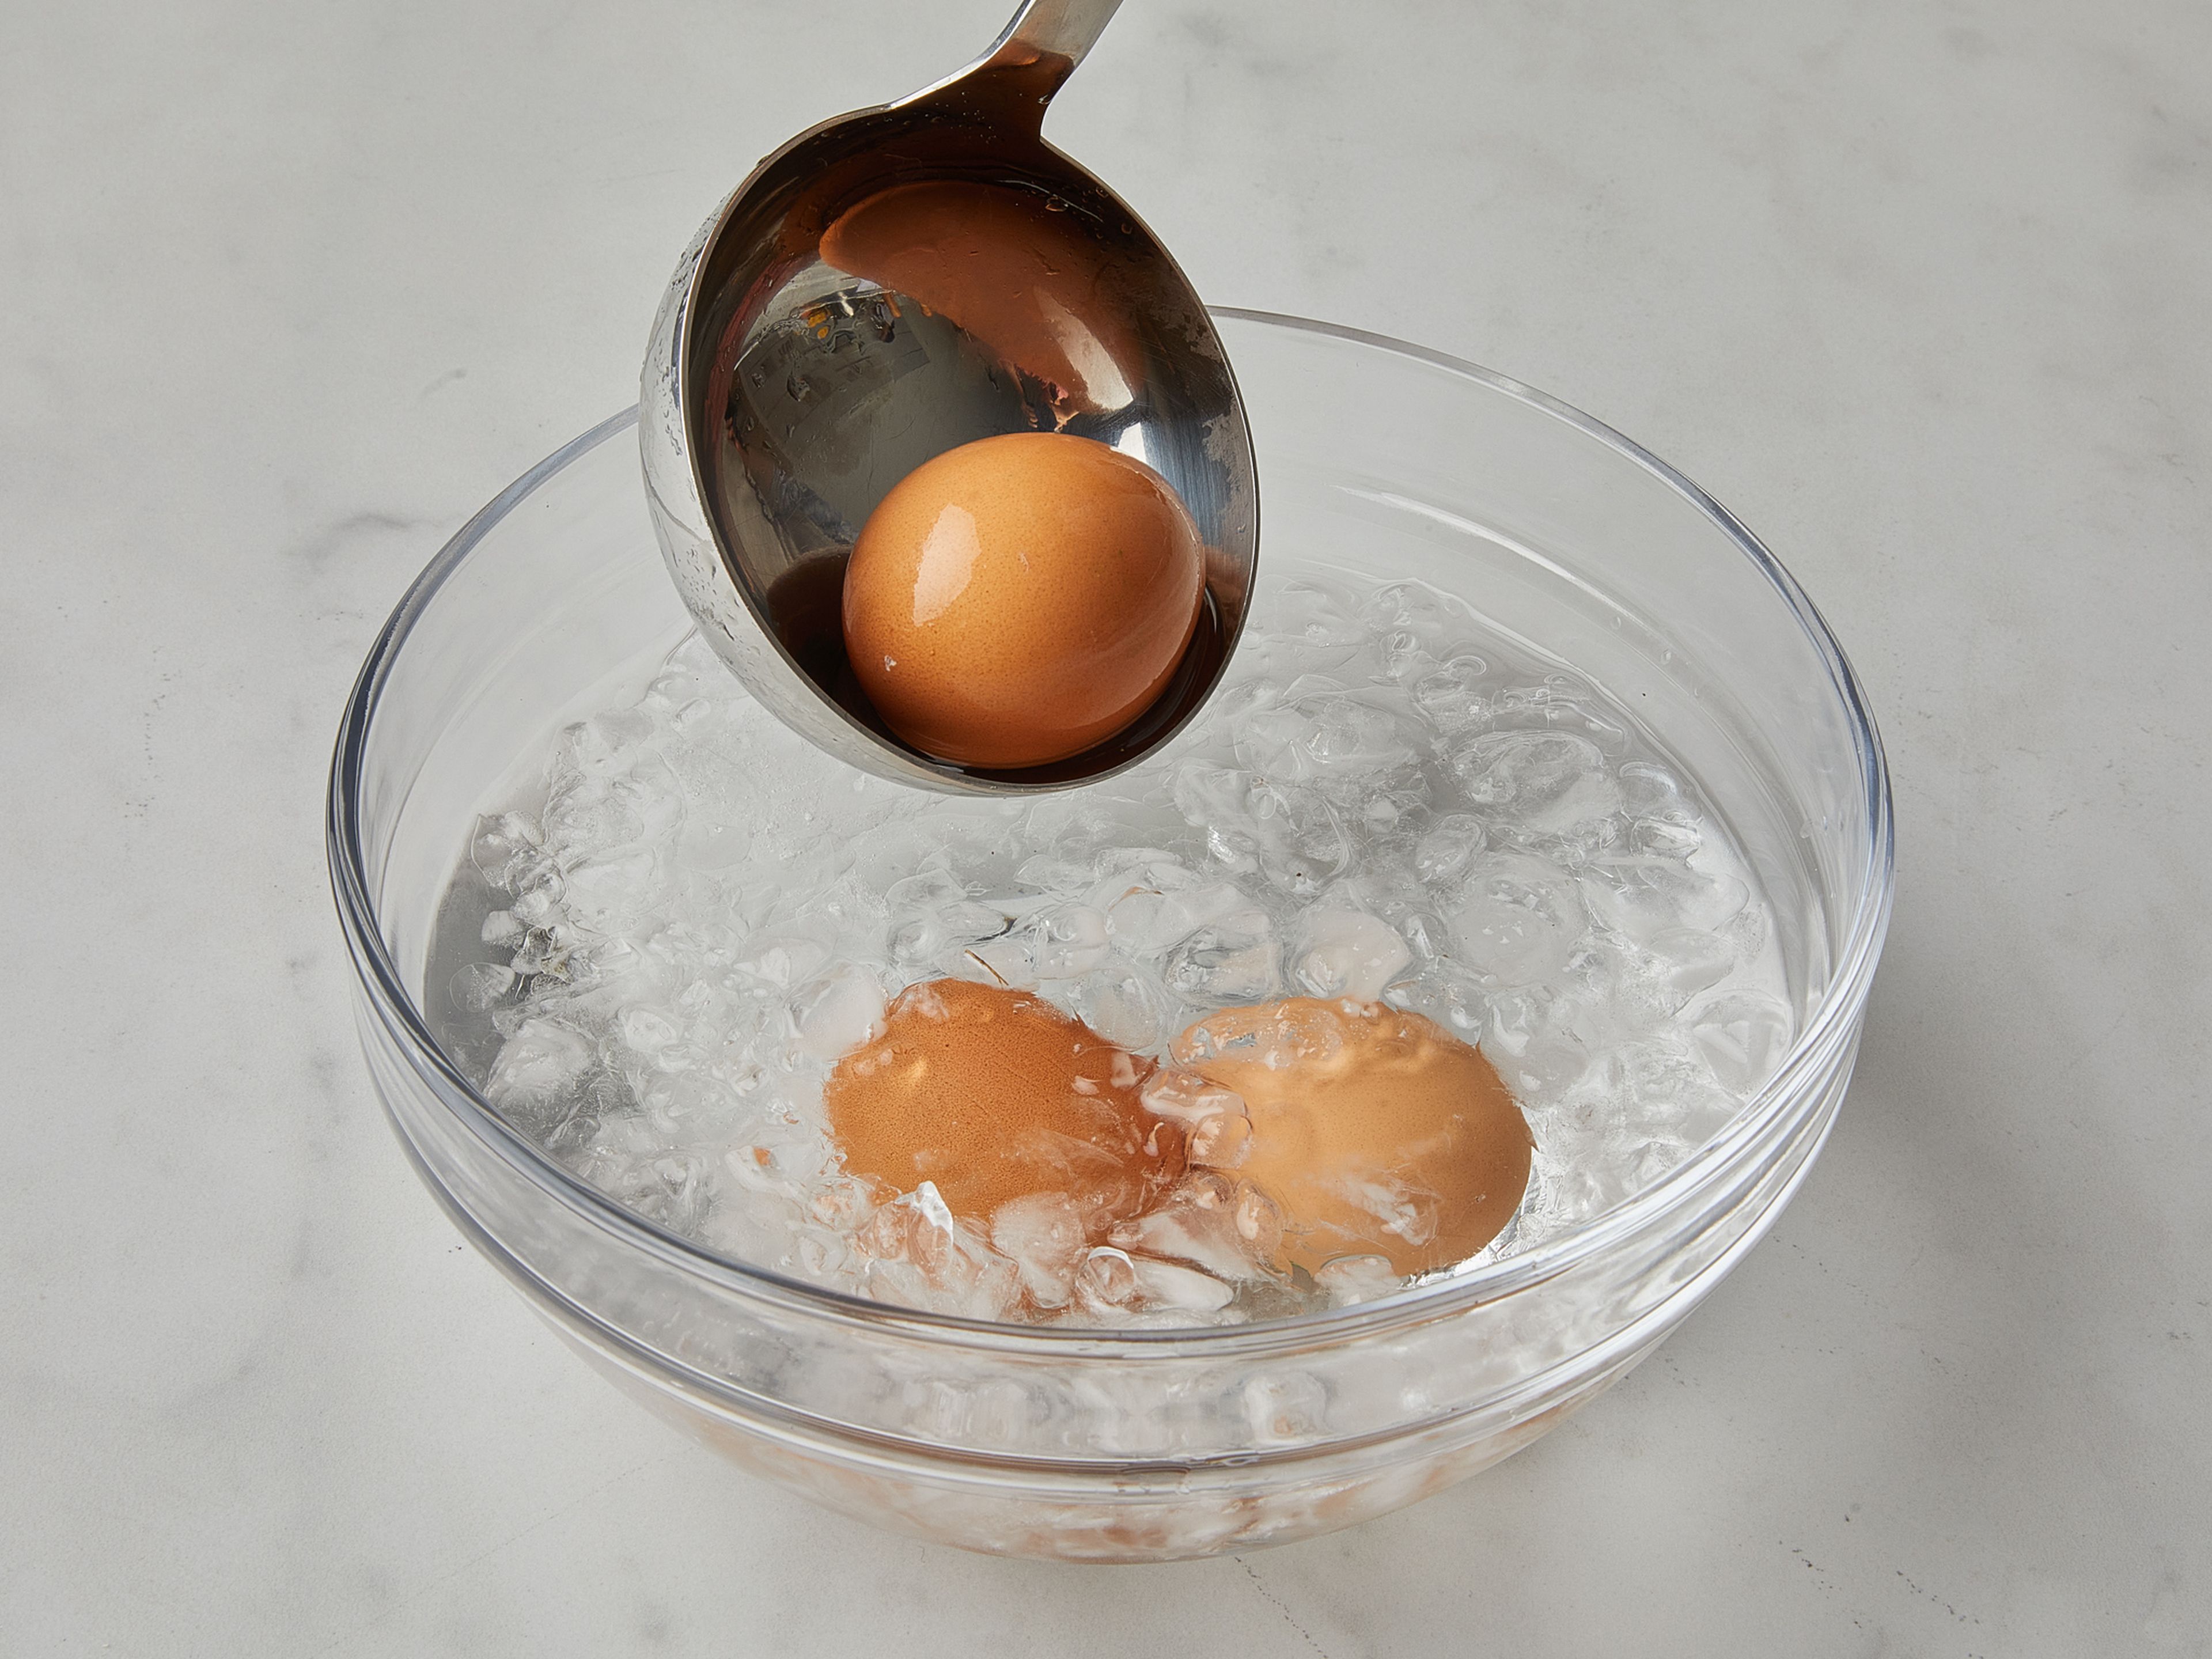 Die Eier auf Zimmertemperatur bringen. Einen Topf mit Wasser zum Köcheln bringen. Die Eier mit einer Schöpfkelle vorsichtig hineingeben und ca. 6 Min. köcheln lassen. Danach die Eier sofort in eine Schüssel mit Eiswasser geben, um den Kochprozess zu stoppen.